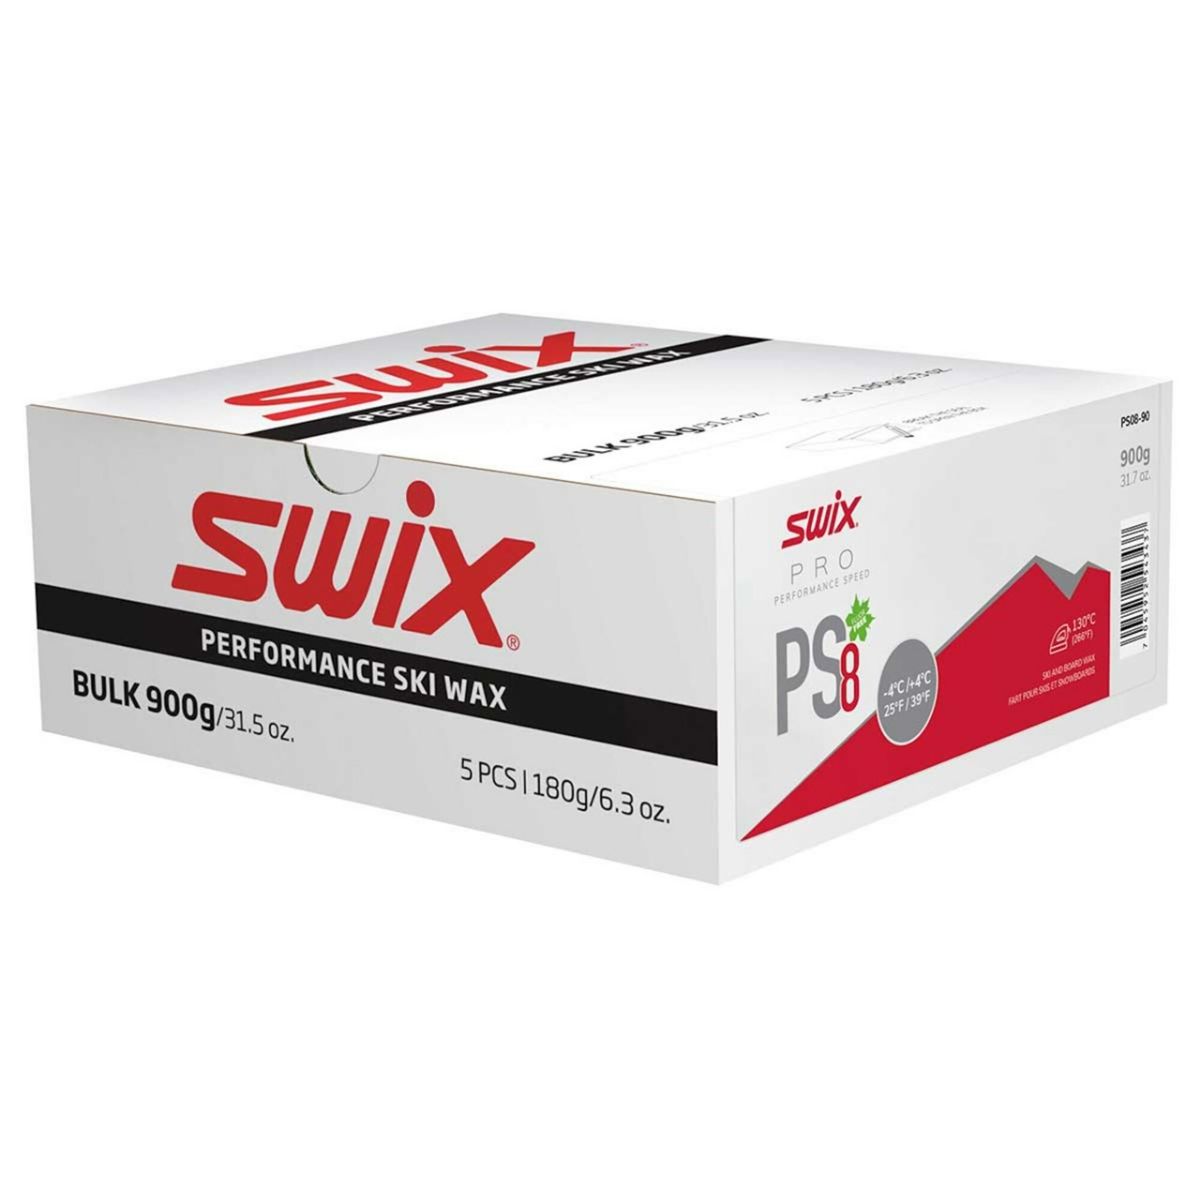 swix-ps8-900g-bulk